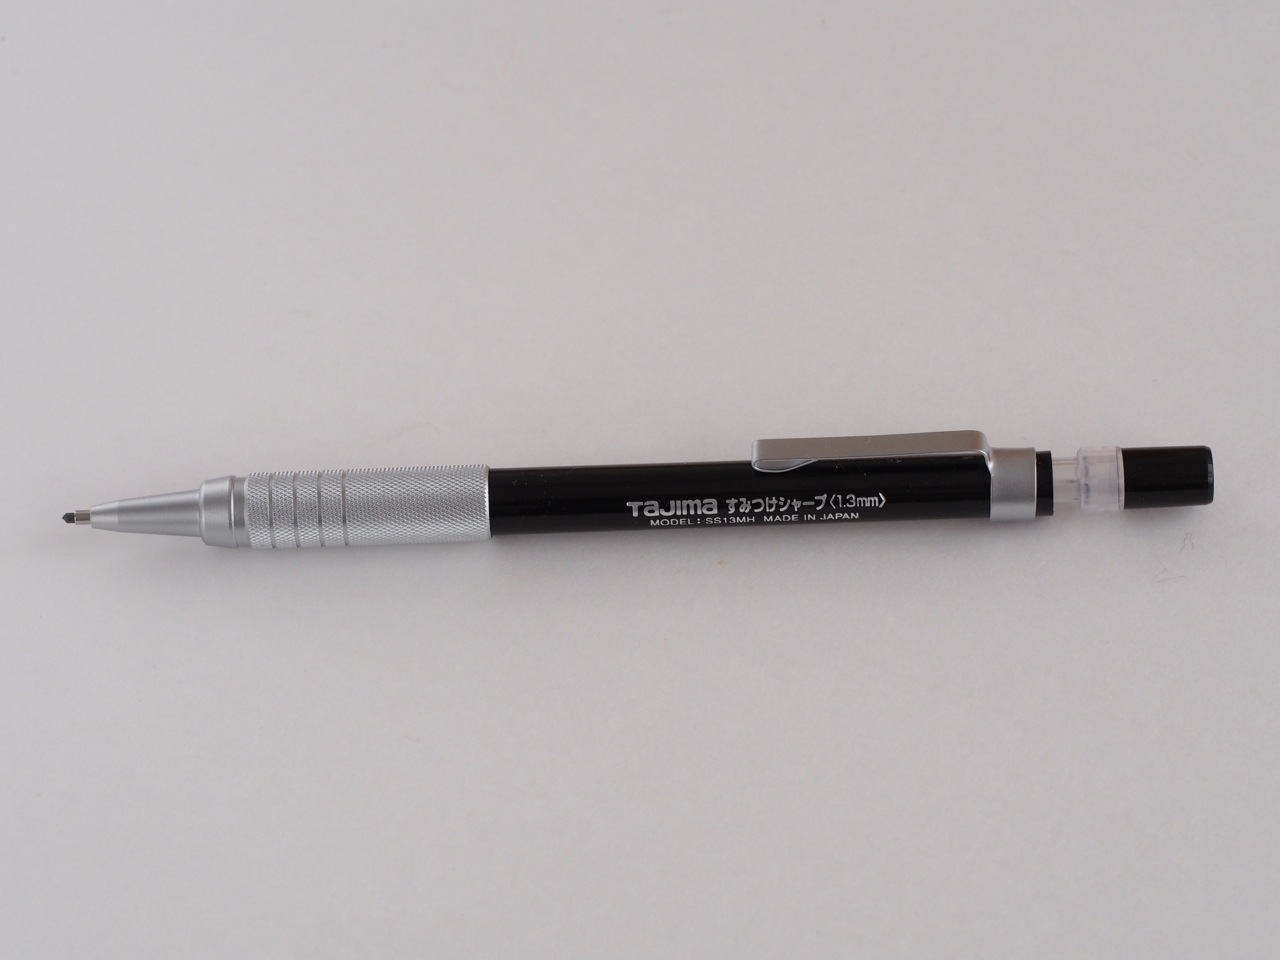 1.3mmシャープペンが優れている5つの理由 | 文房具 | クールシニアマガジン